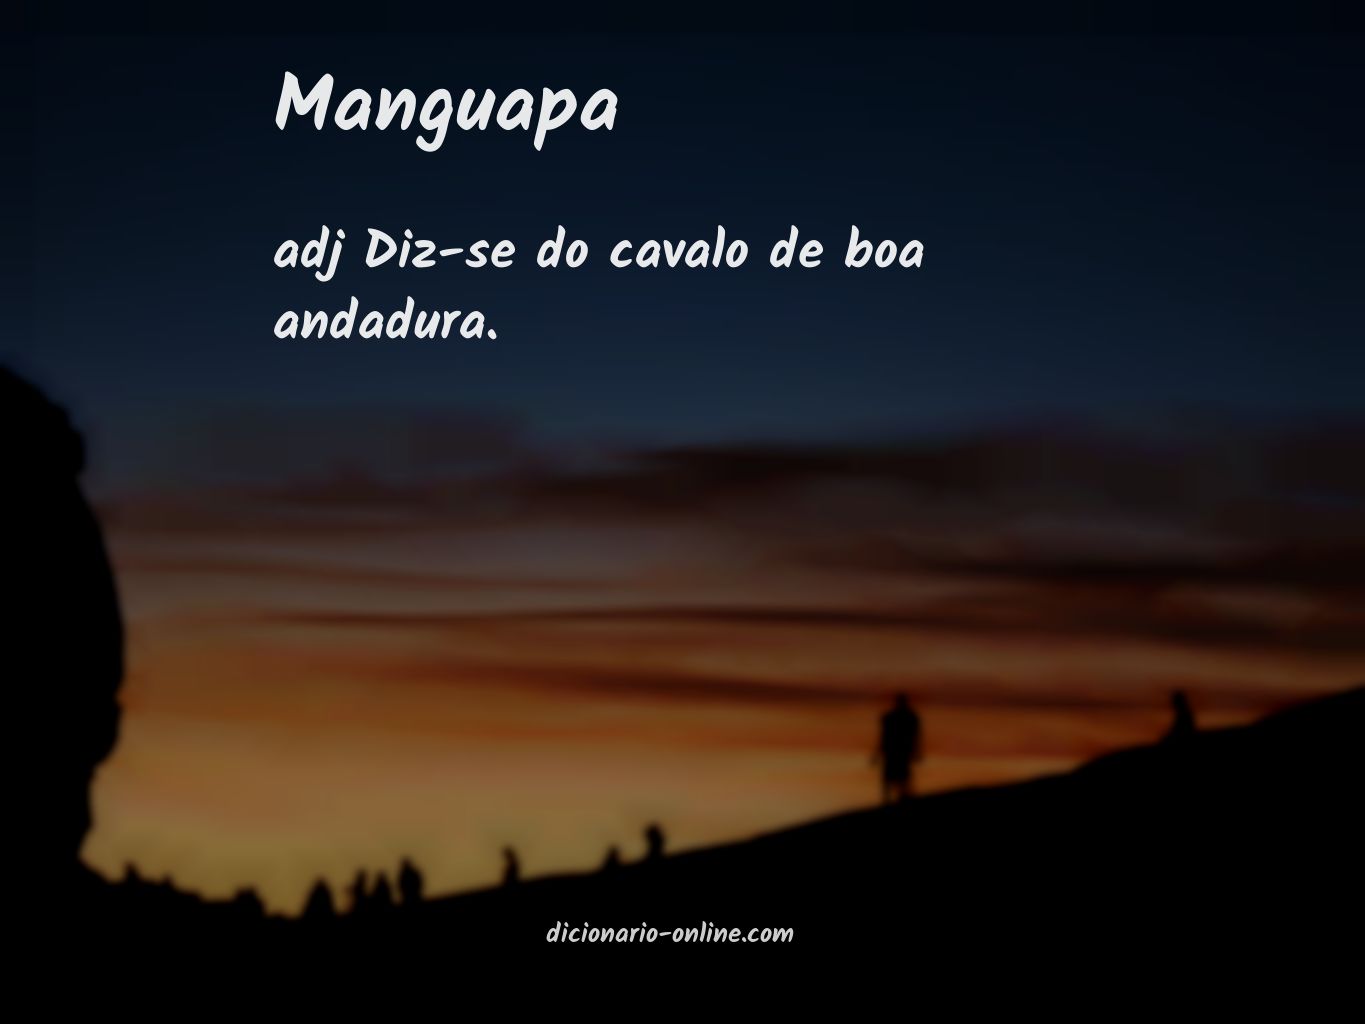 Significado de manguapa